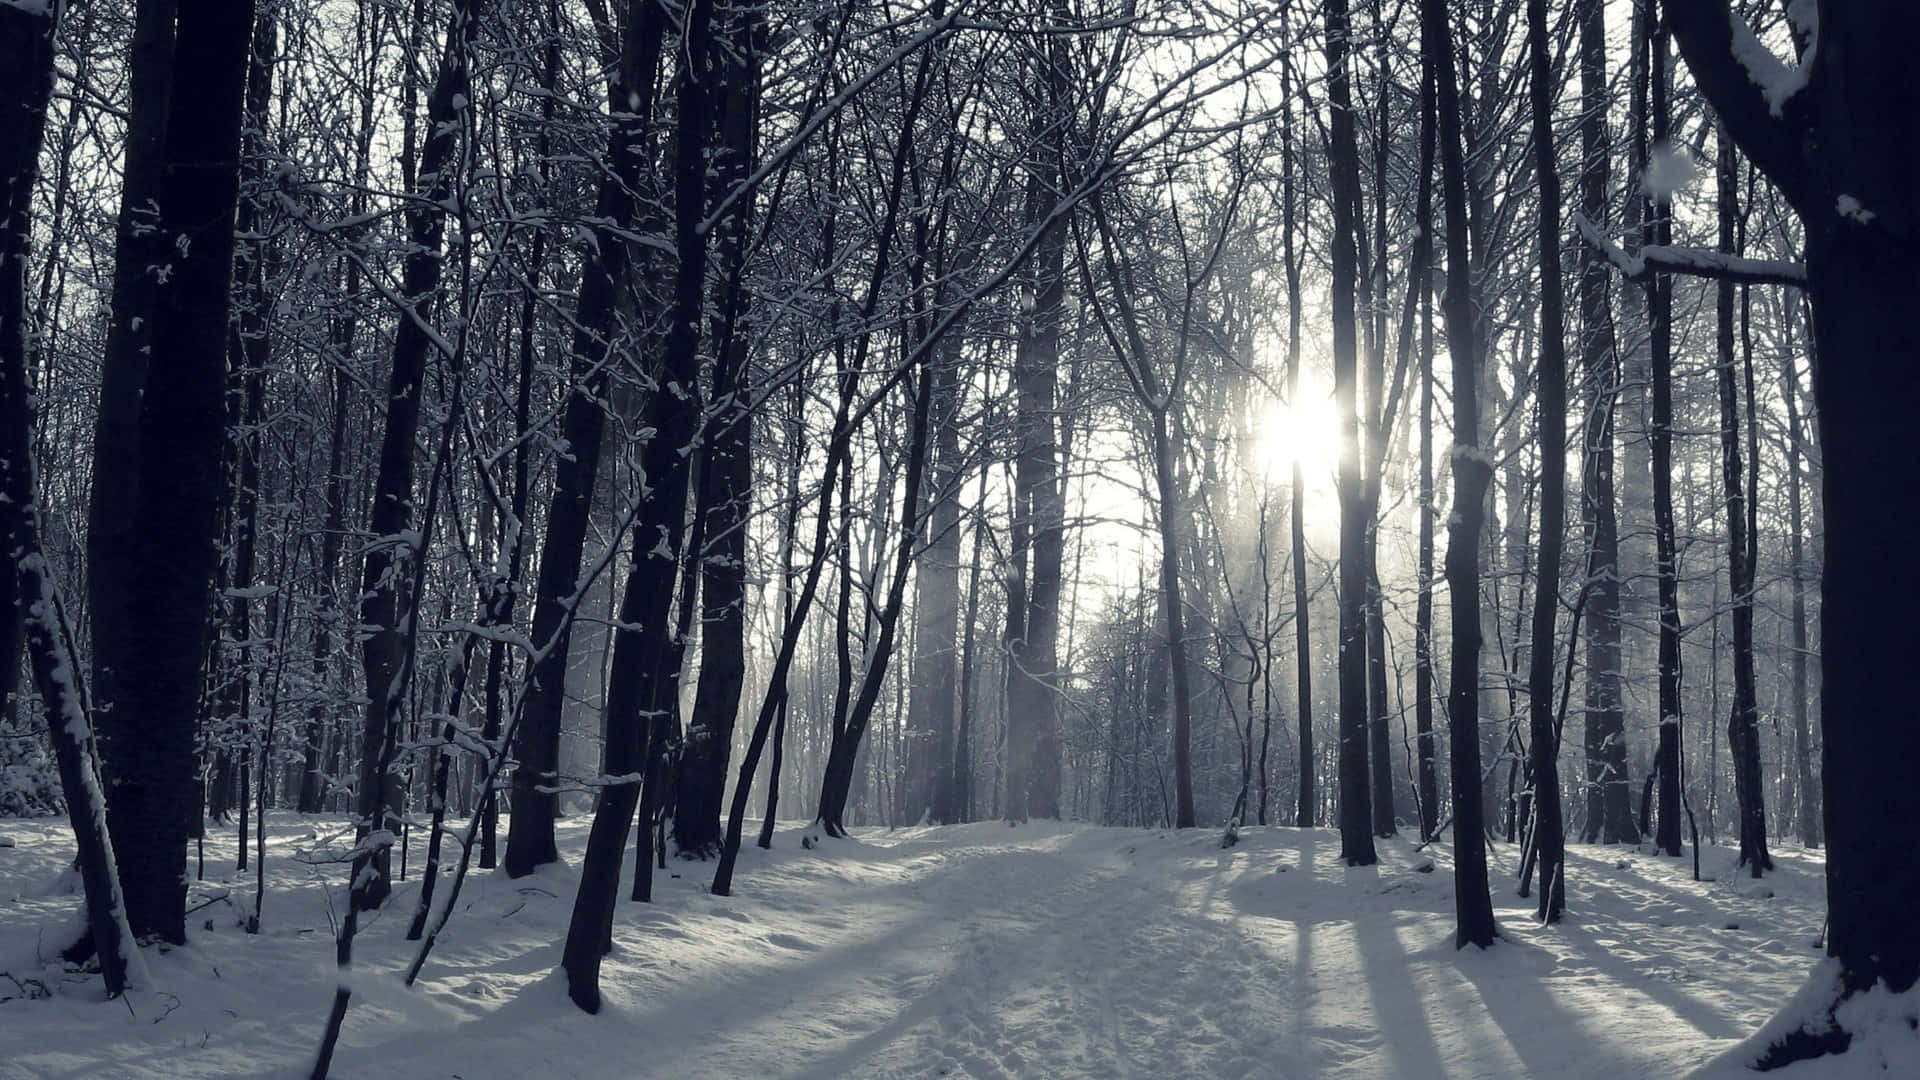 Uncamino Cubierto De Nieve En Un Bosque Con La Luz Del Sol Filtrándose Entre Los Árboles.